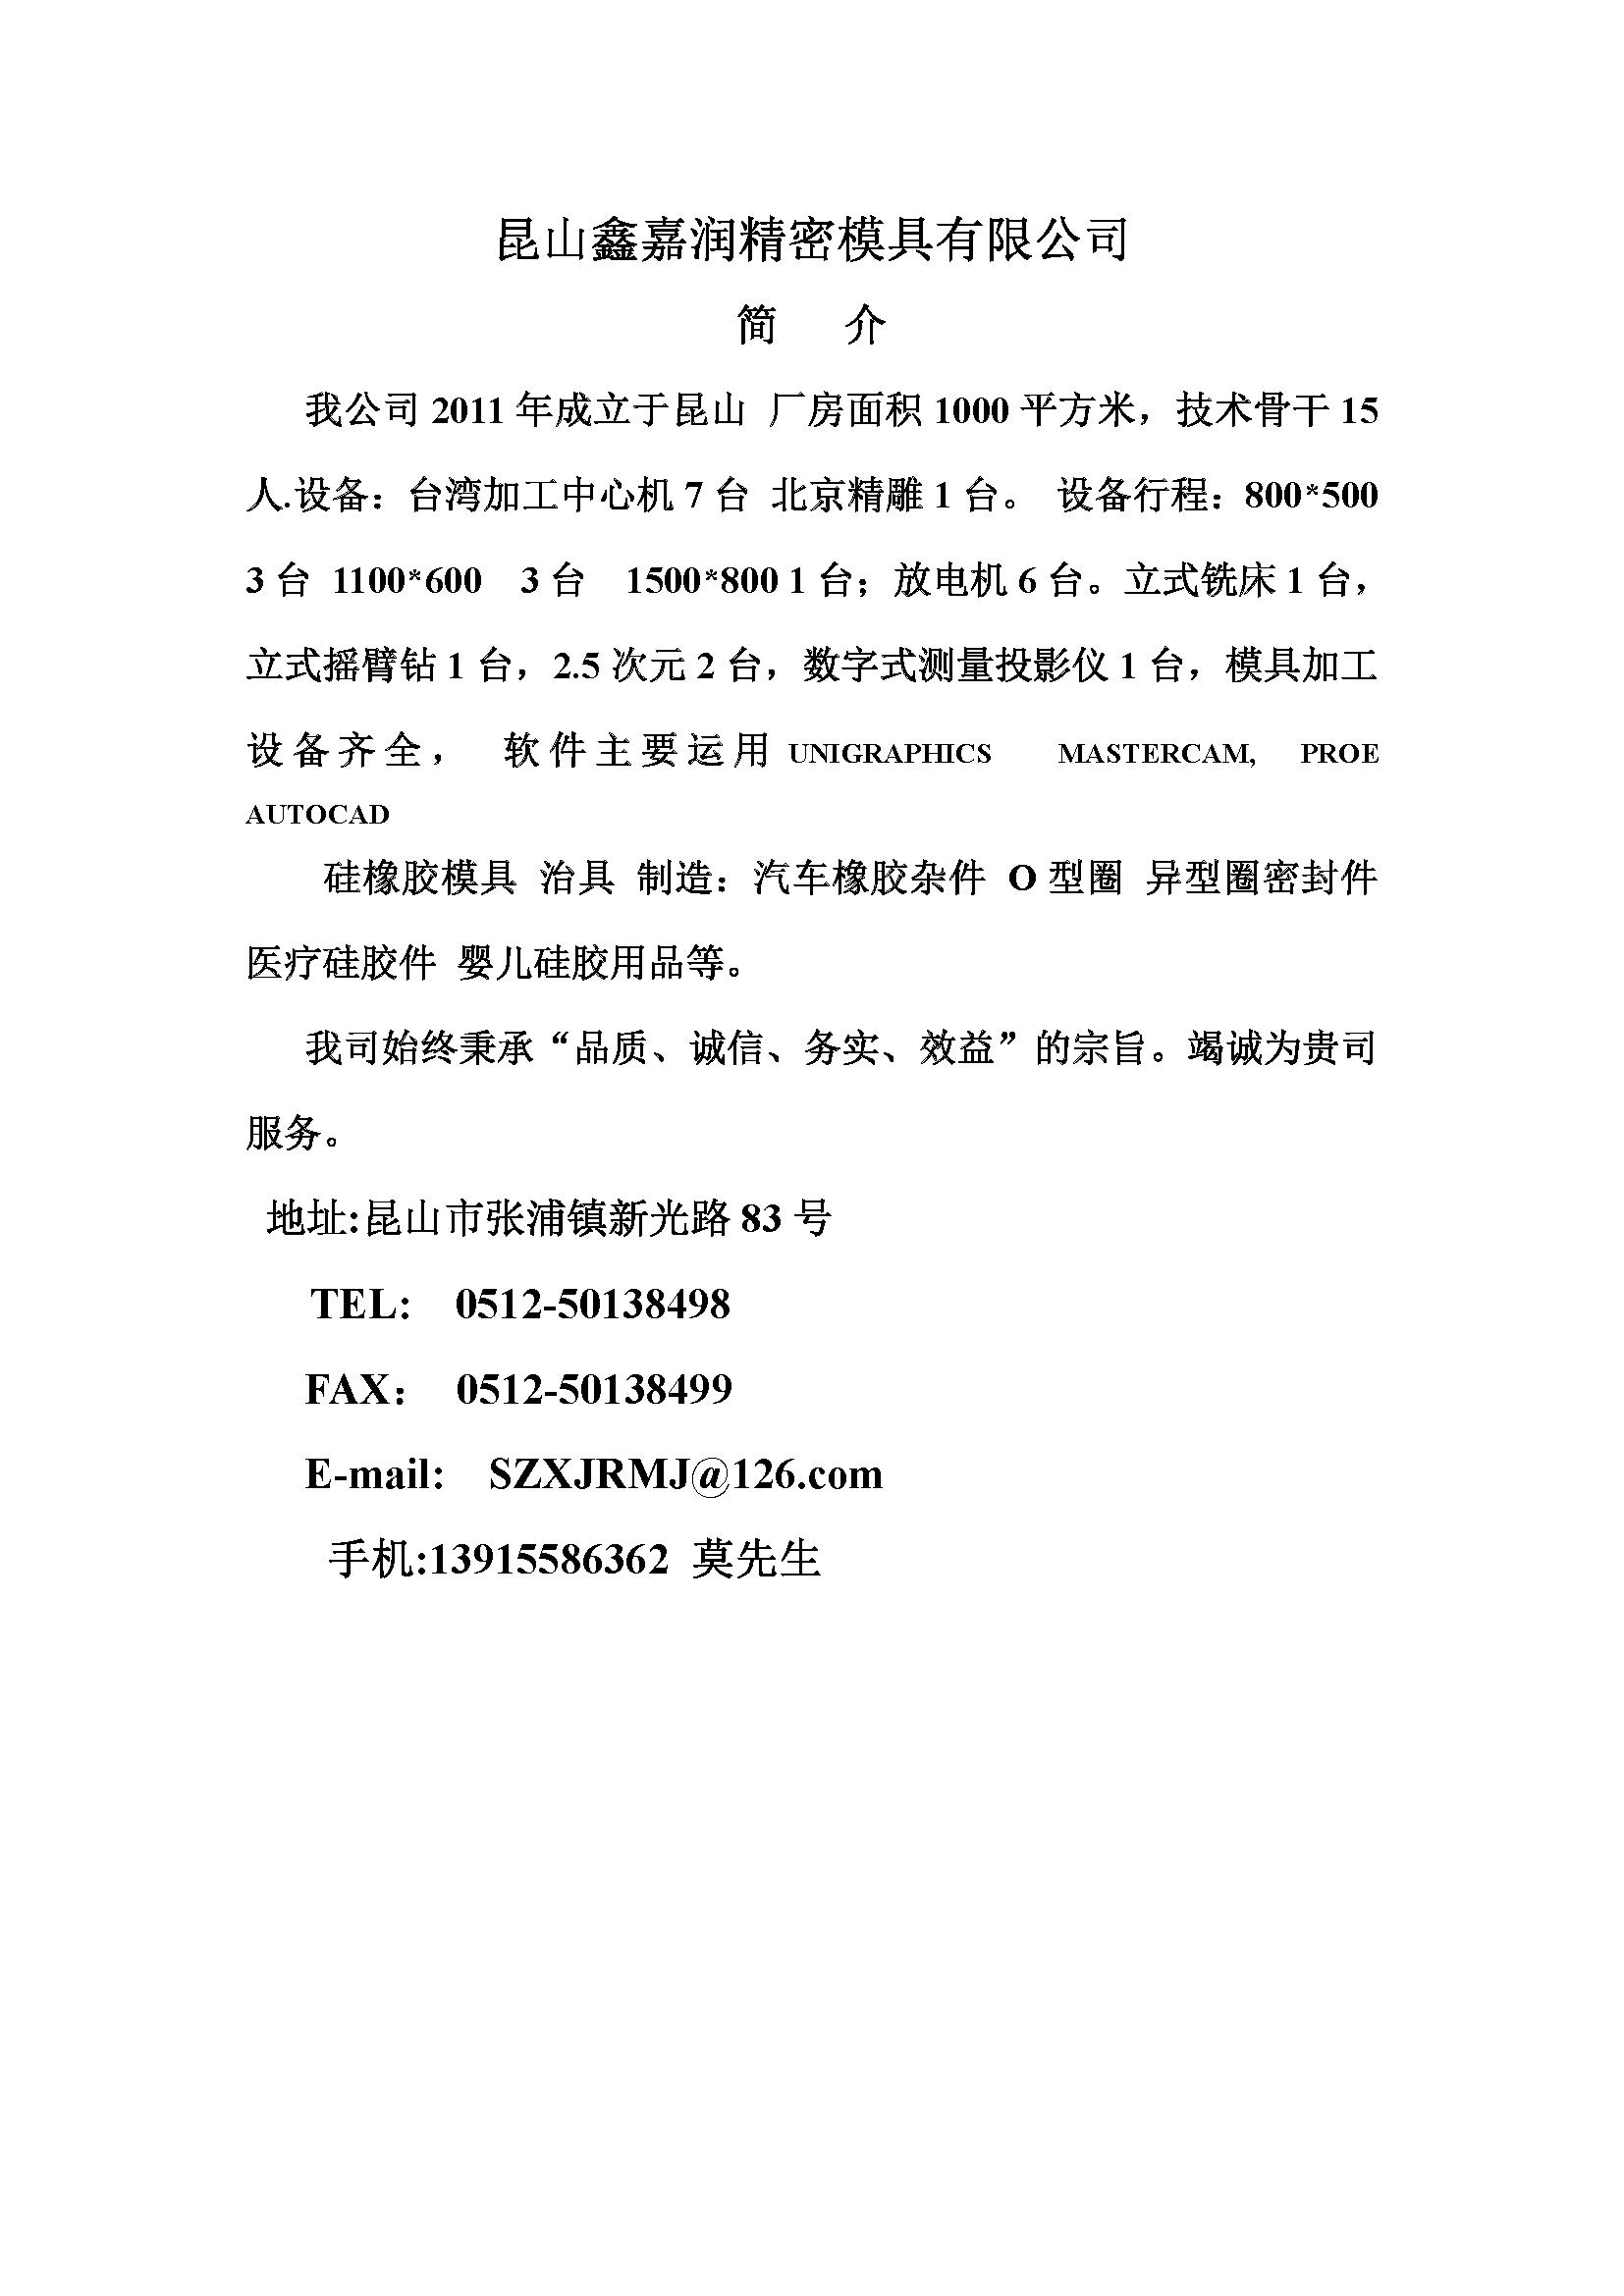 莫柏全昆山鑫嘉润精密模具有限公司简介.png